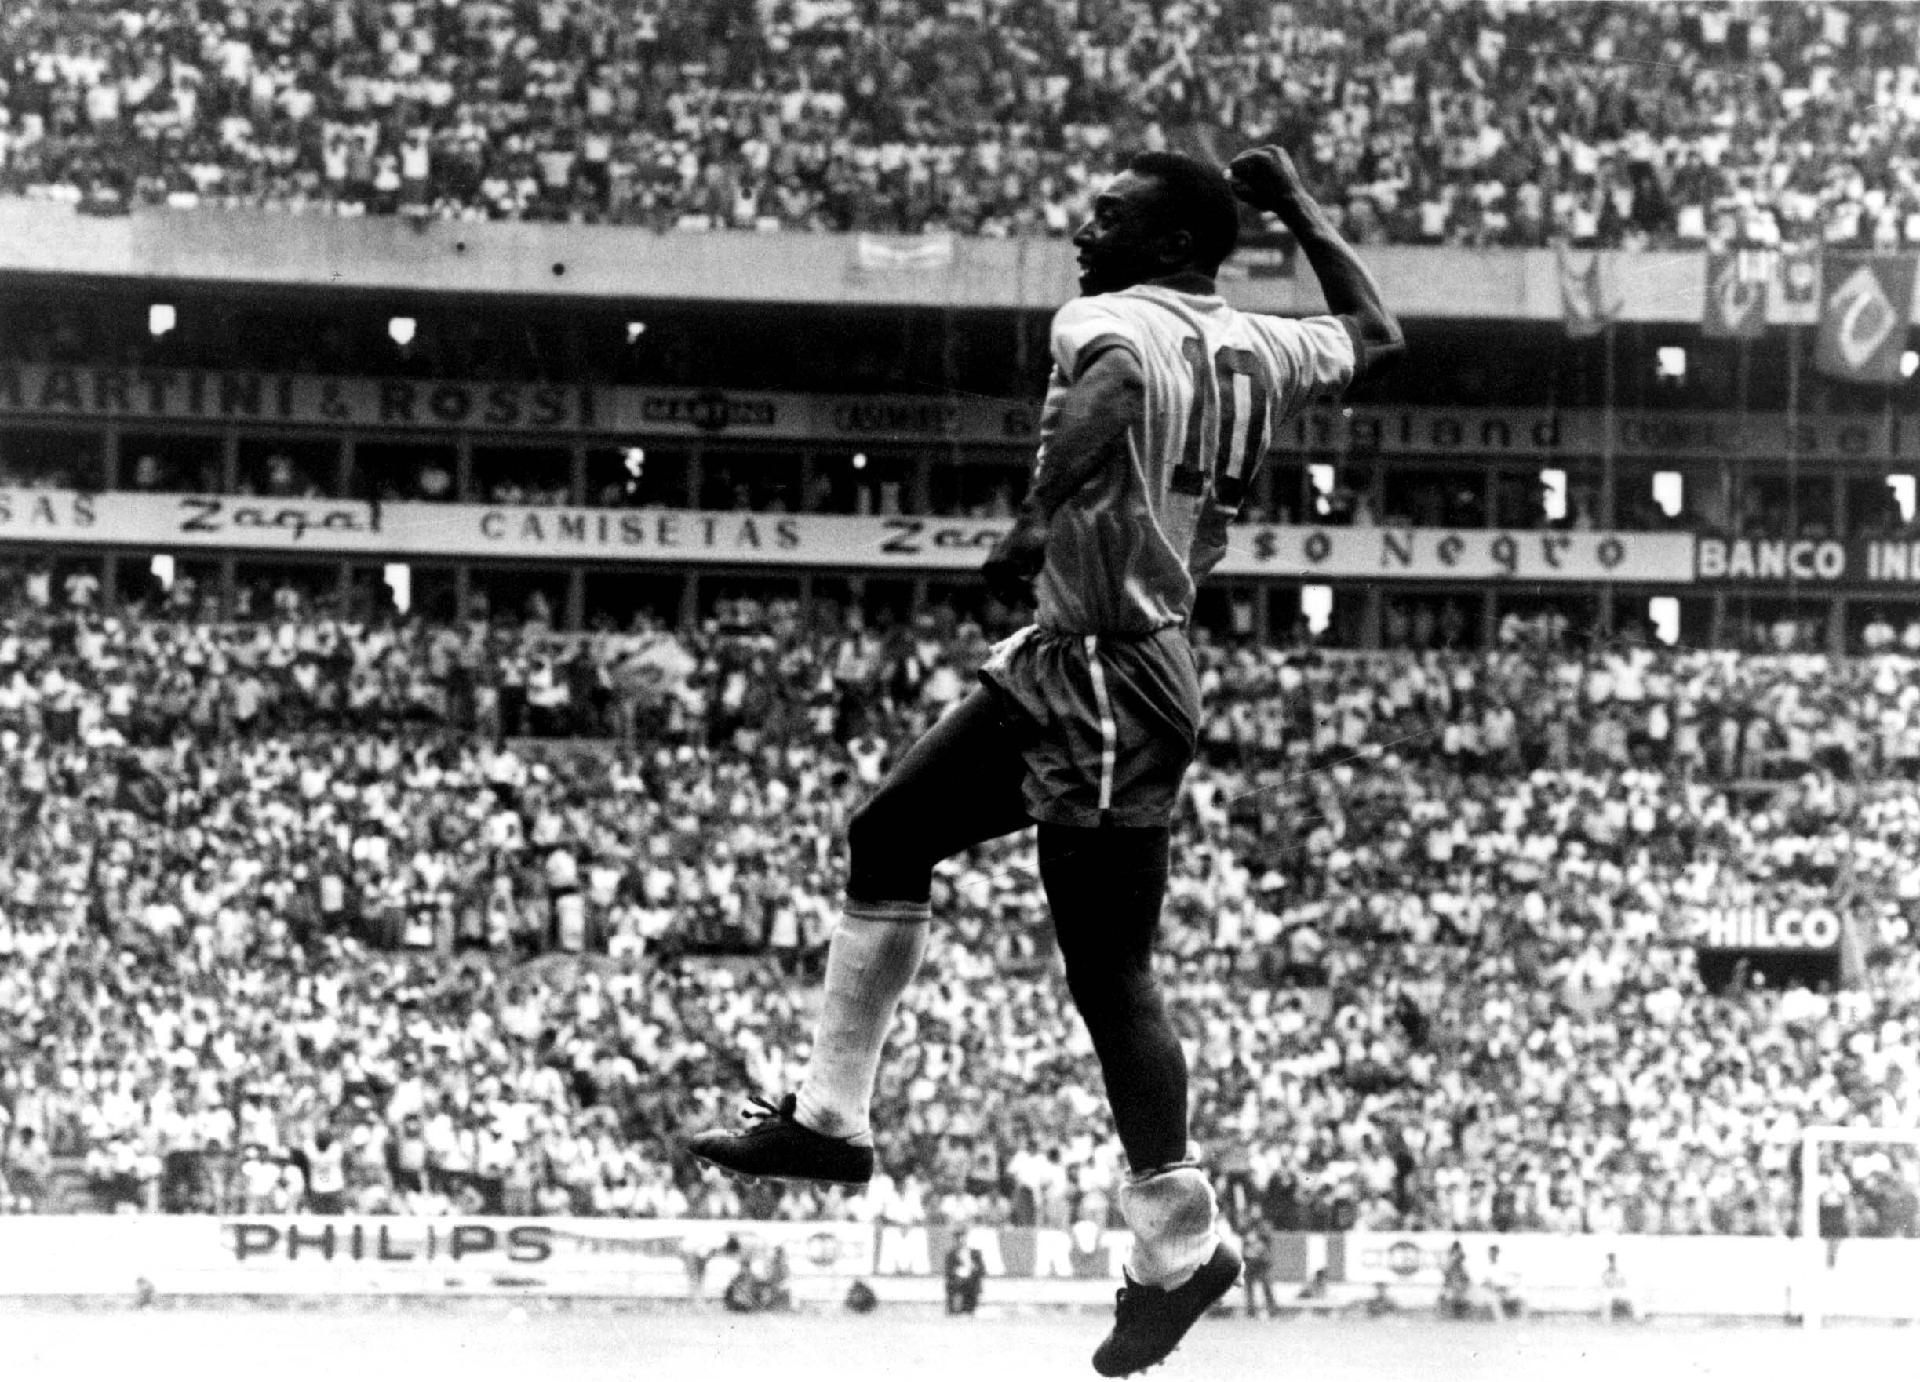 03/06/1970 - Pelé comemora gol pela Seleção Brasileira contra a Checoslováquia com um soco no ar, gesto que criou logo no início da carreira, em uma partida contra o Juventus, e se tornou sua marca registrada. - Domicio Pinheiro/Estadão Conteúdo